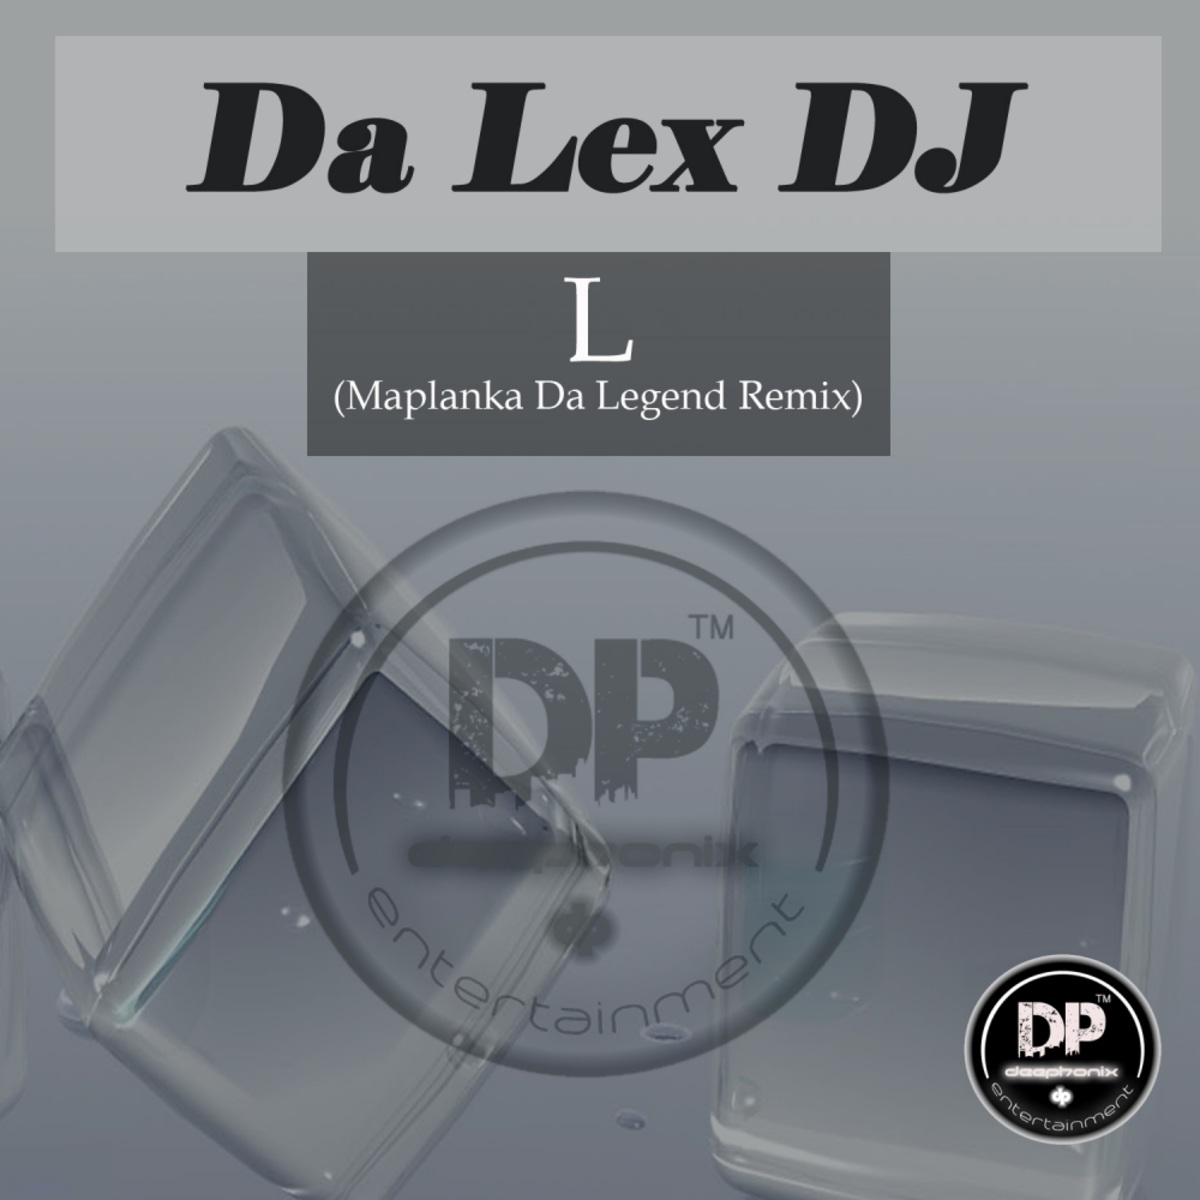 Da Lex DJ - L (Maplanka Da Legend Remix) / Deephonix